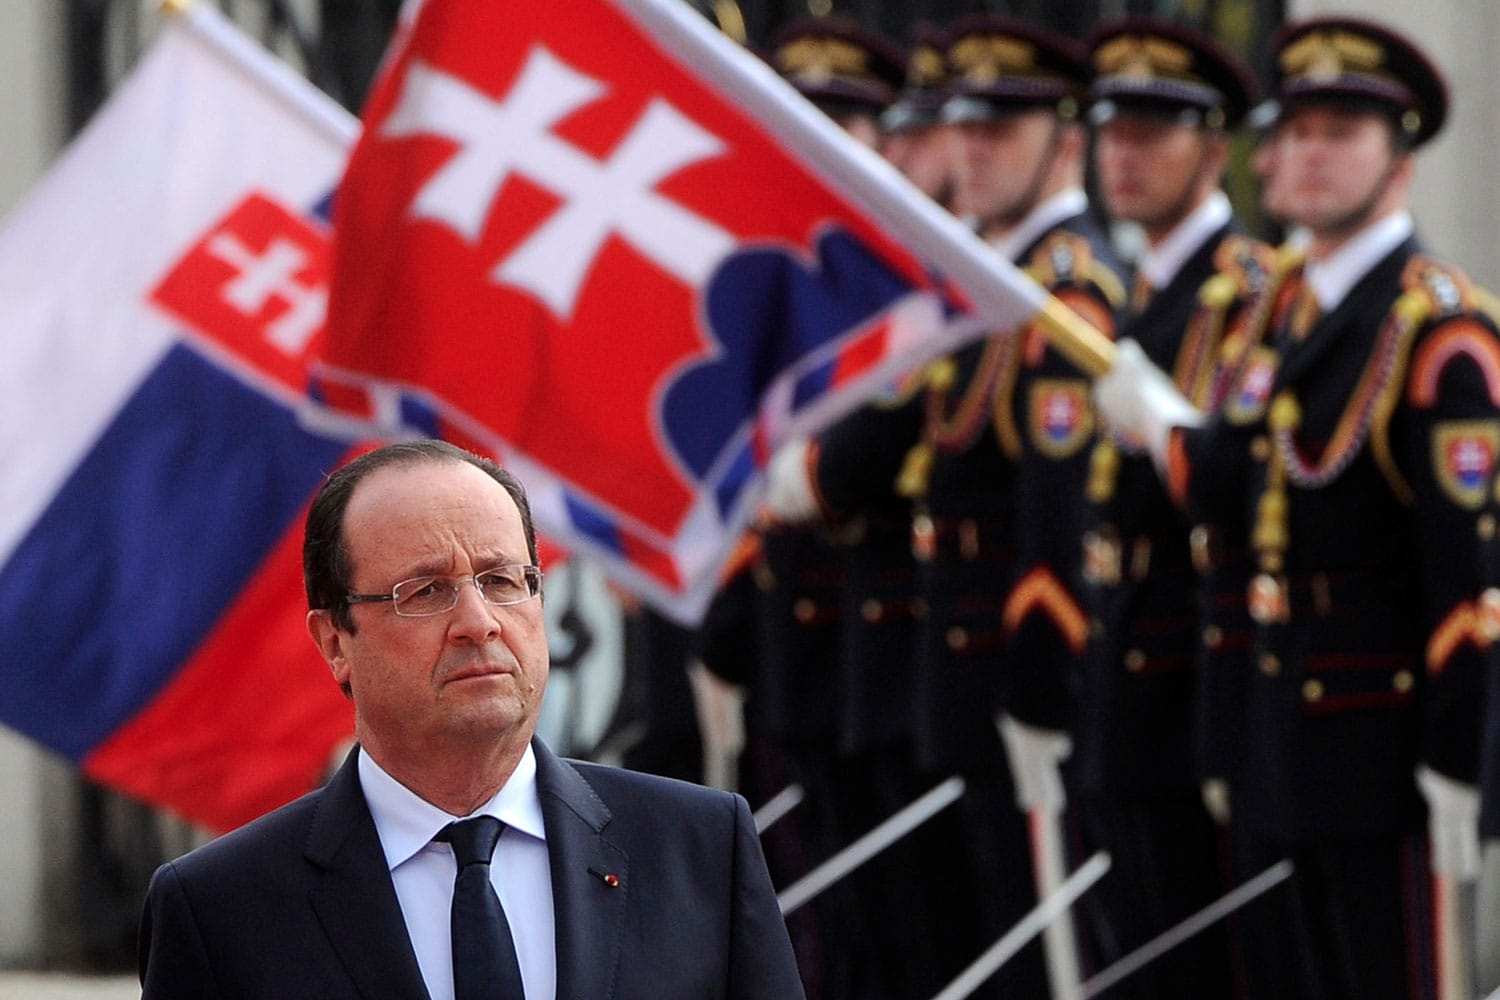 Hollande se convierte en el presidente francés más impopular desde que se hacen este tipo de sondeos